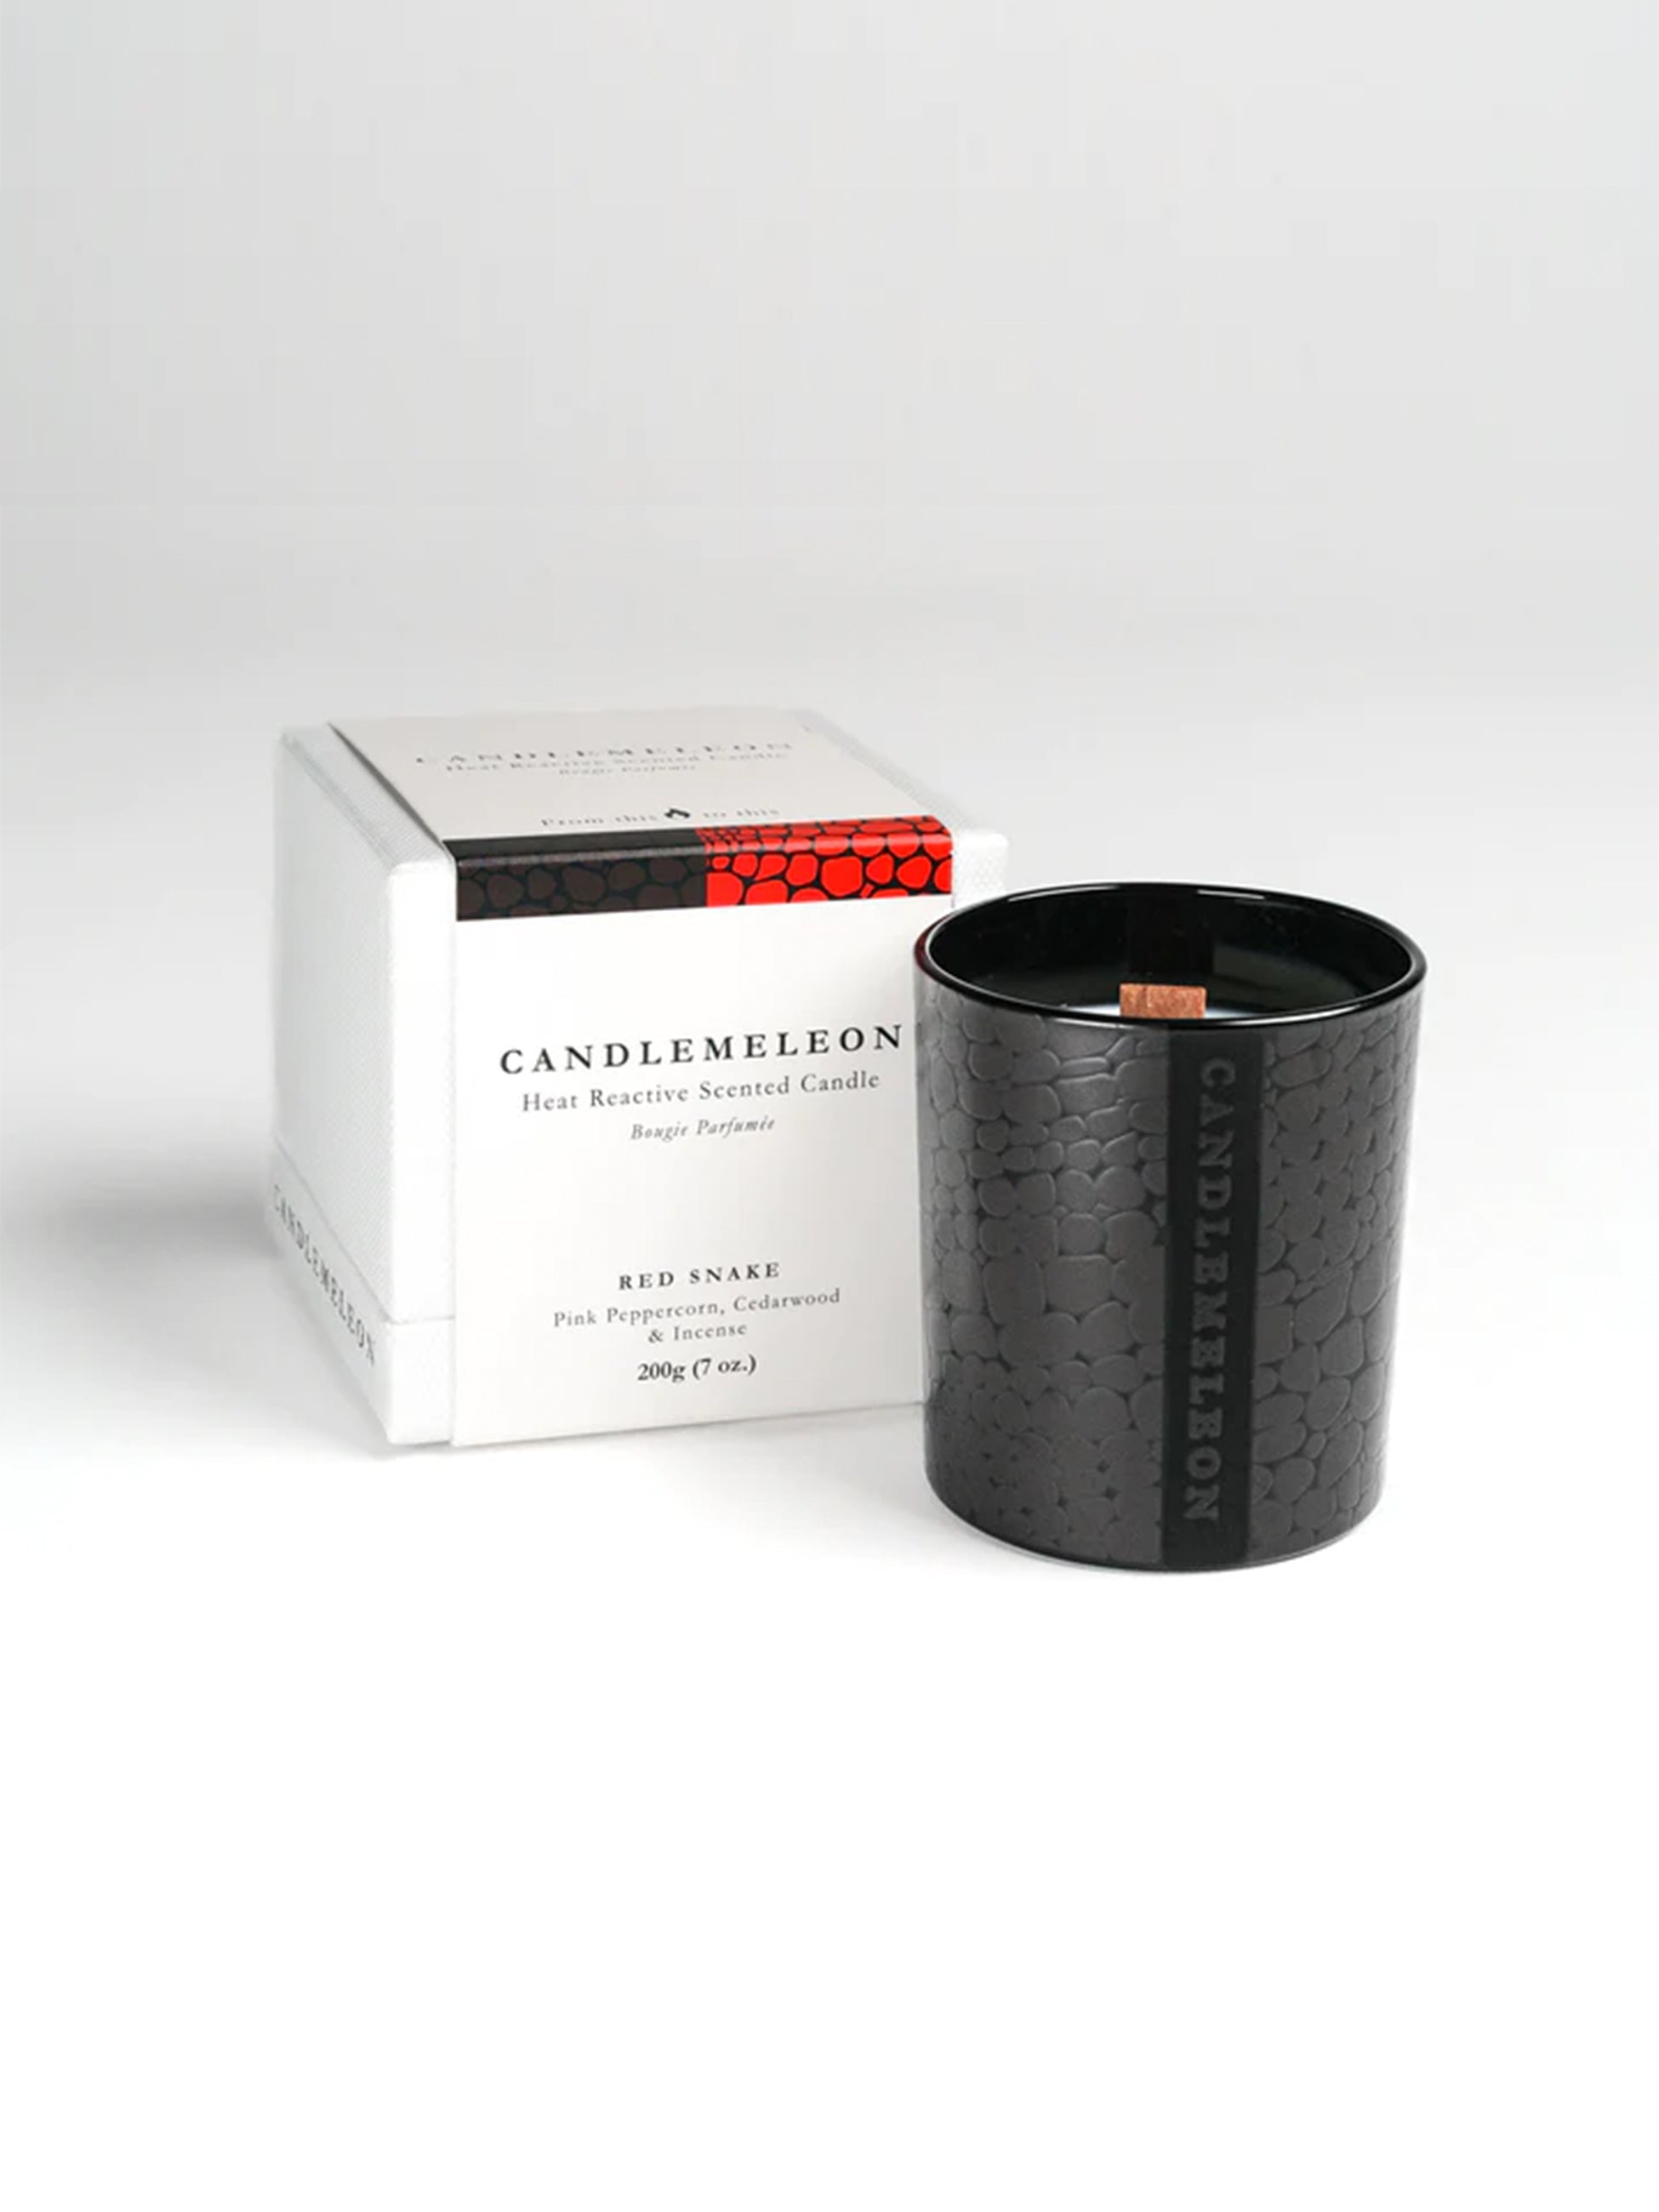 Candlemeleon - Red Snake